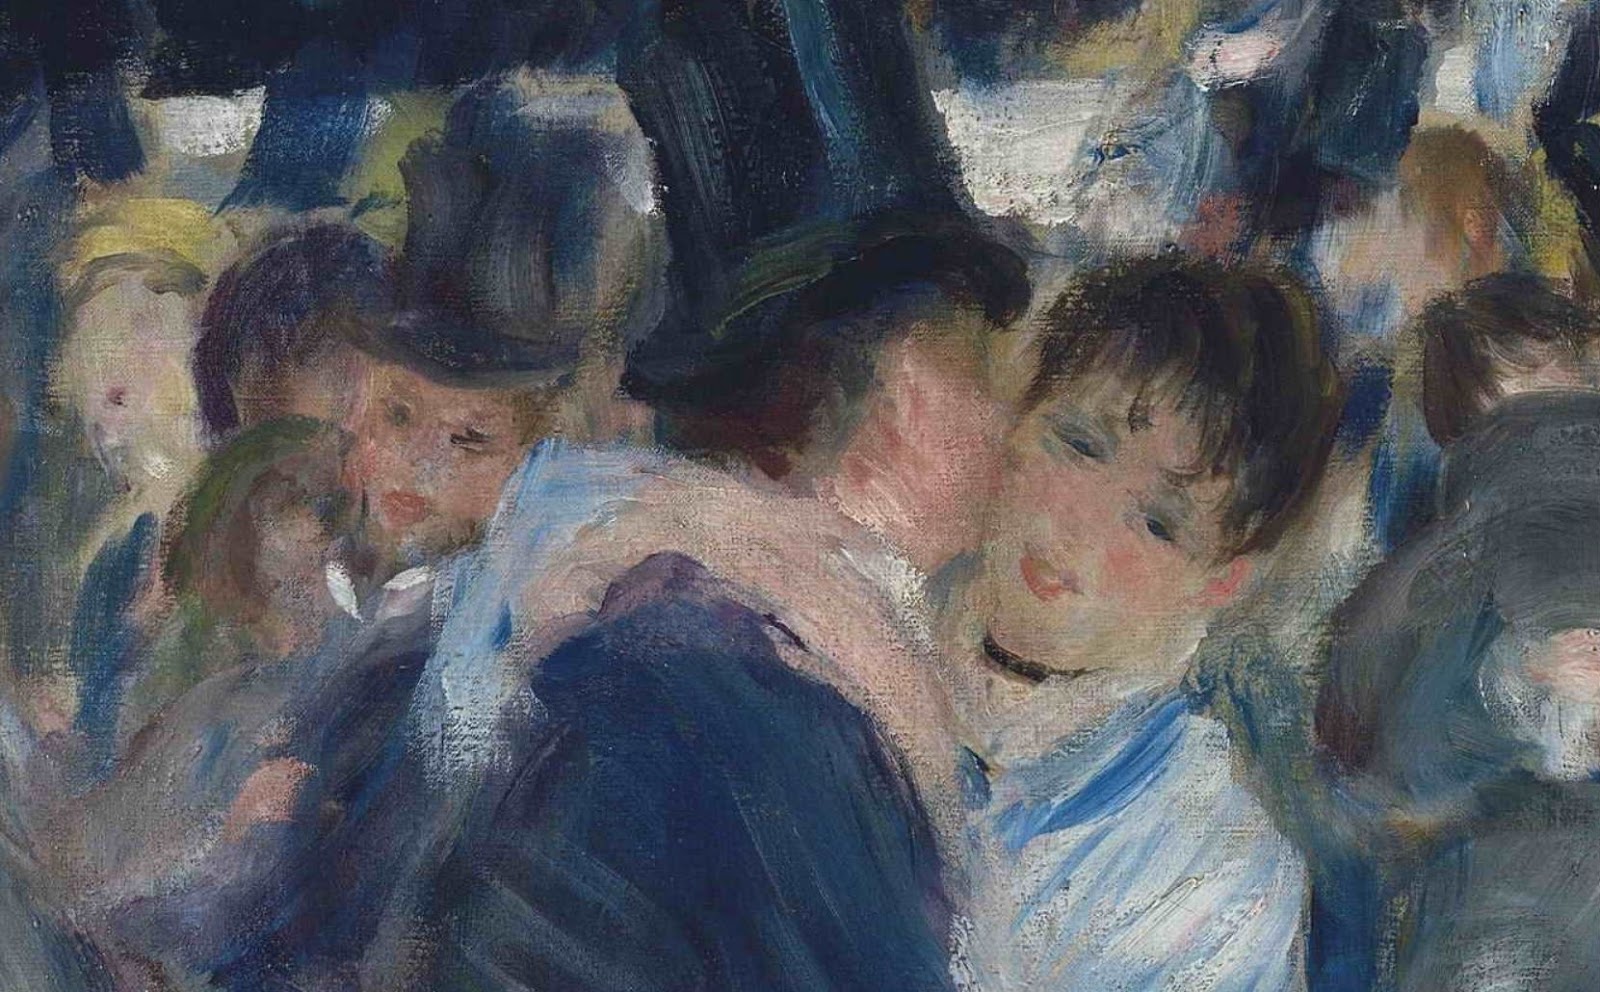 Pierre+Auguste+Renoir-1841-1-19 (439).JPG